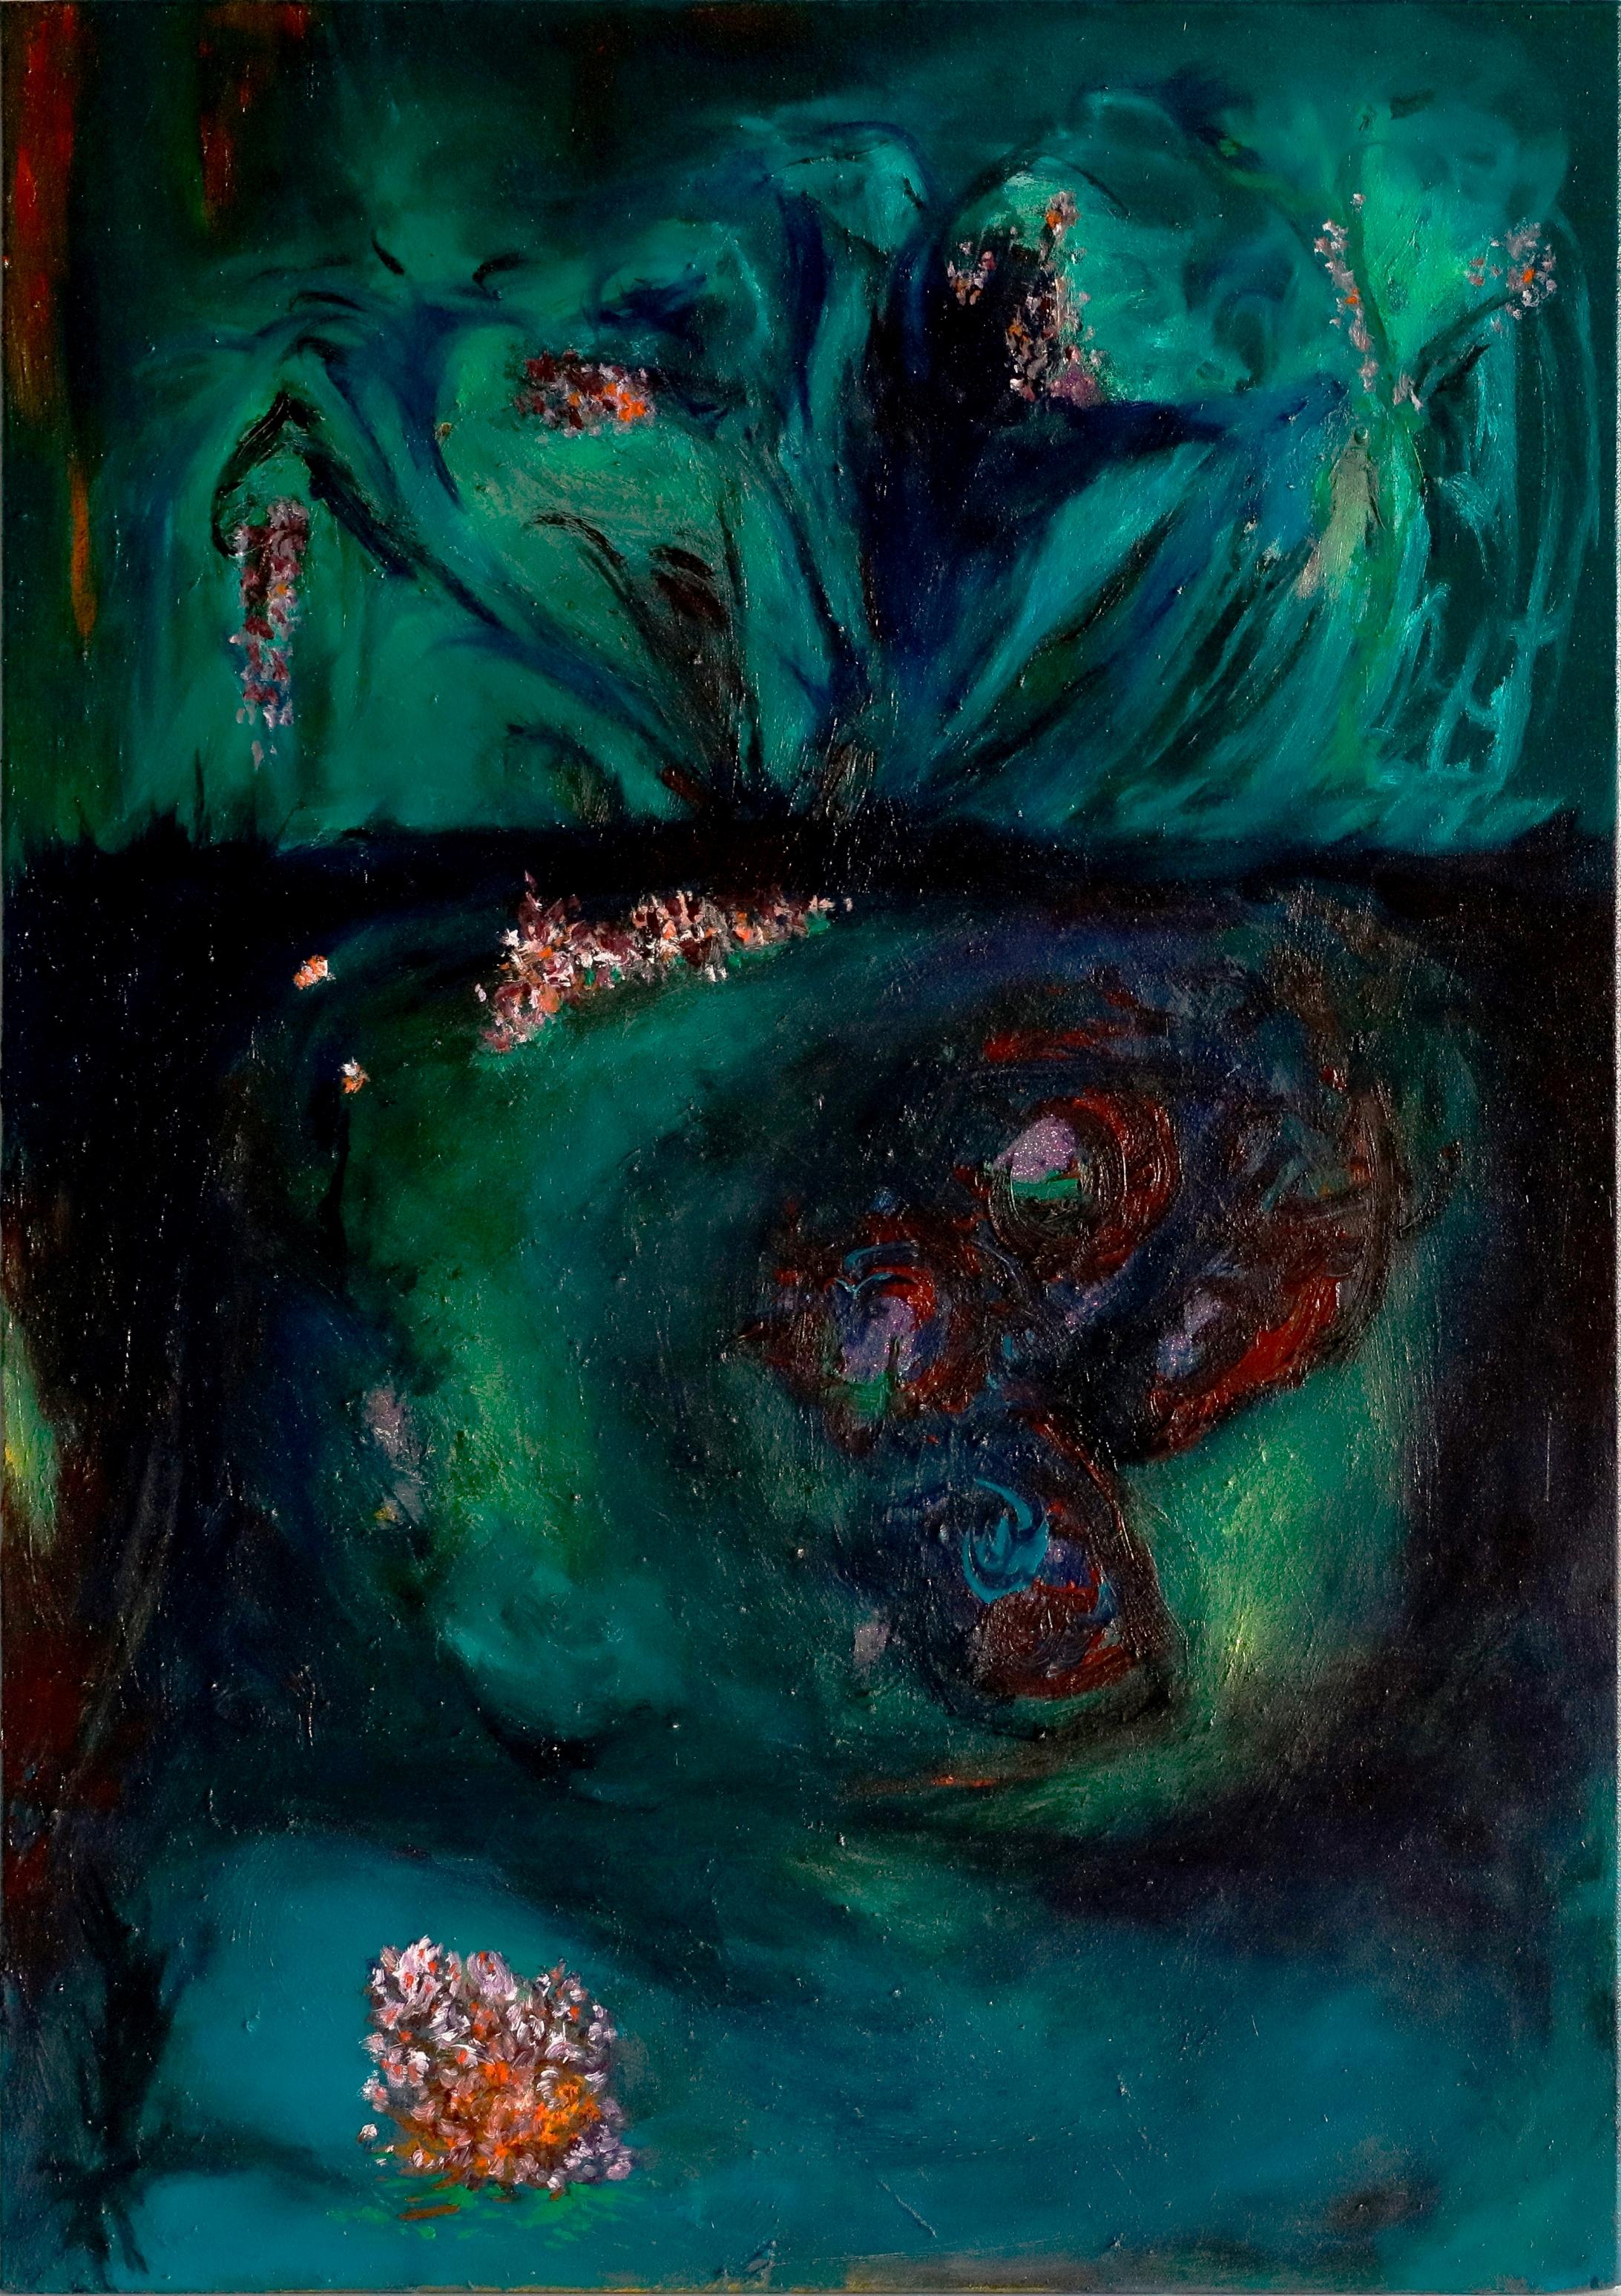 Ölfarbe auf Leinwand
Handsigniert vom Künstler auf der Rückseite

Louis-Paul Ordonneau ist ein 1975 geborener französischer Maler.
Er lebt und arbeitet in Paris.

Im Jahr 1999 richtete er sein Studio an temporären und alternativen Orten in der